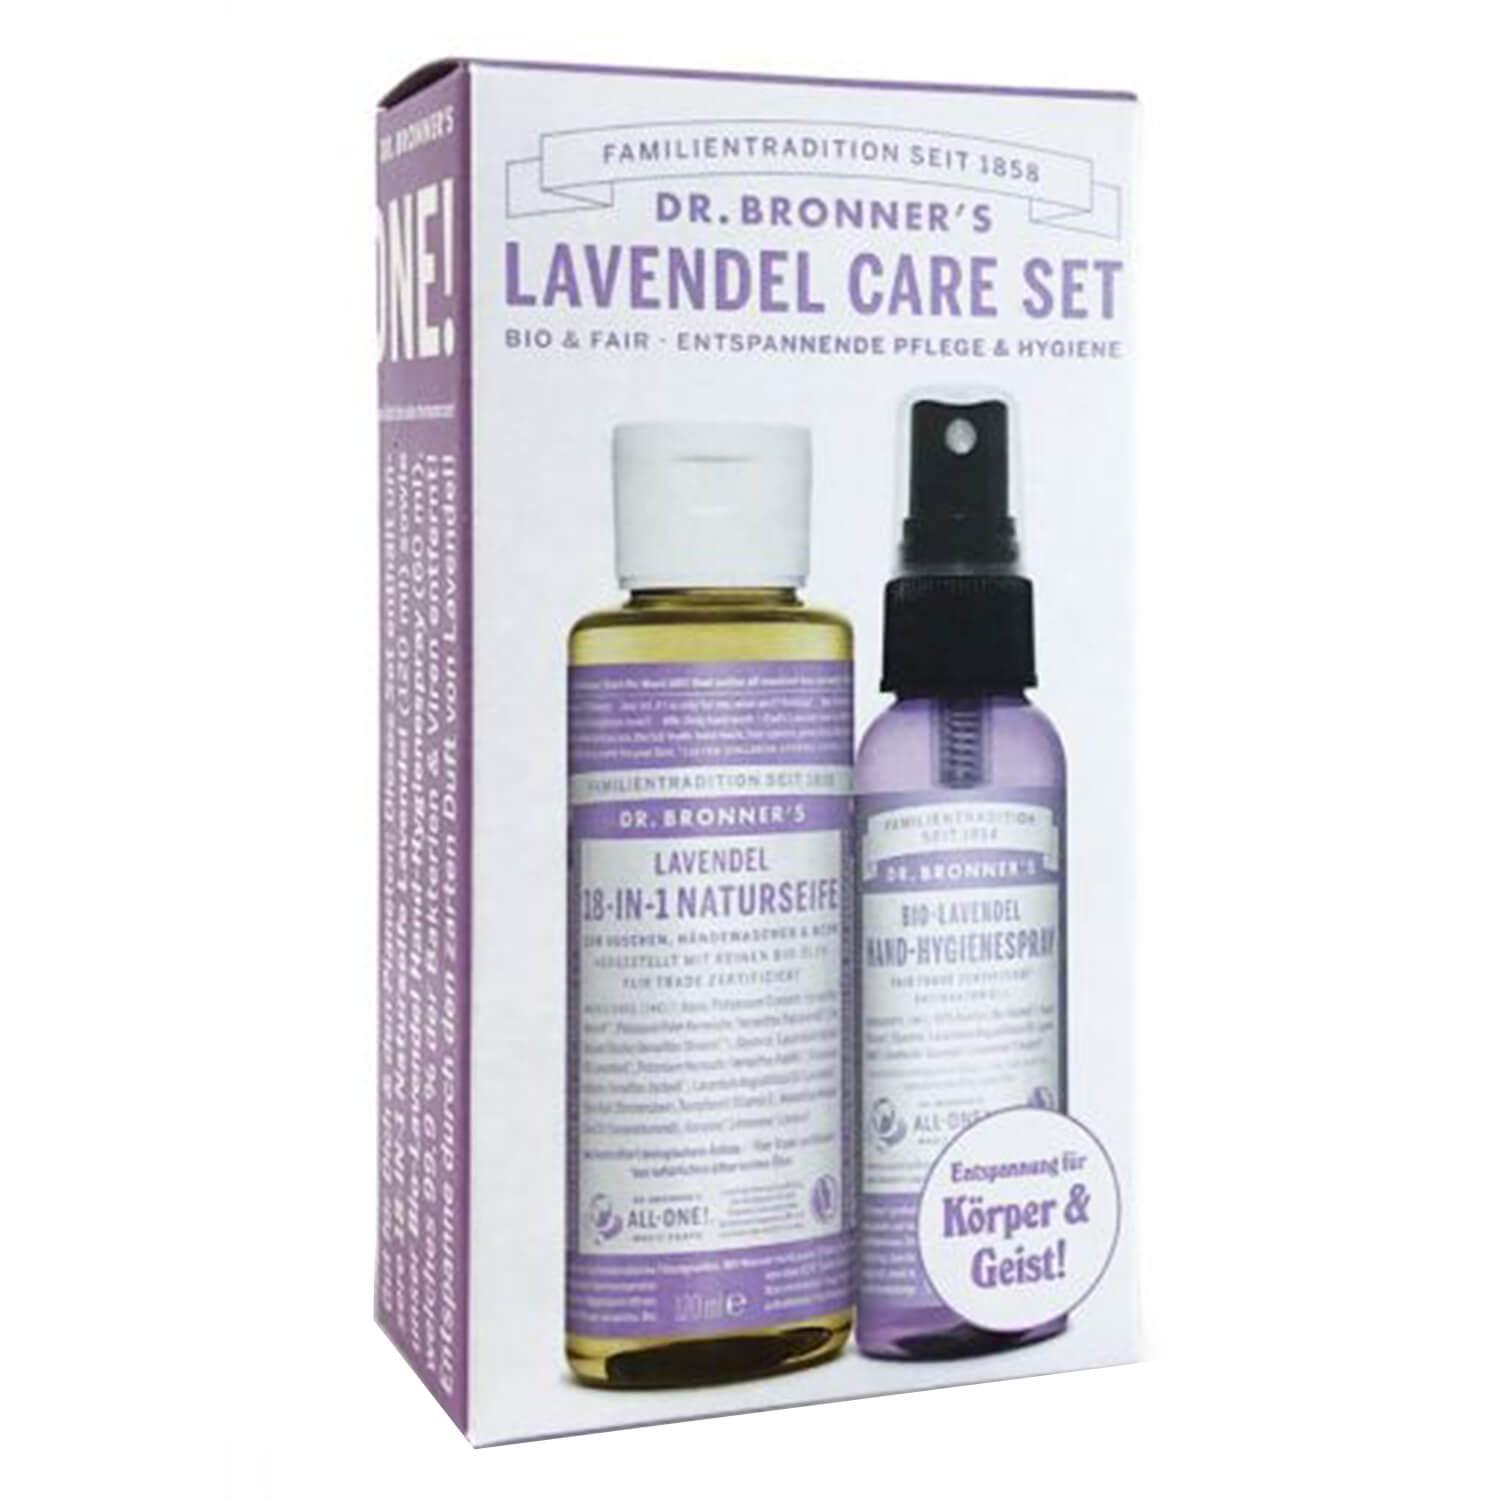 DR. BRONNER'S - Lavendel Care Set